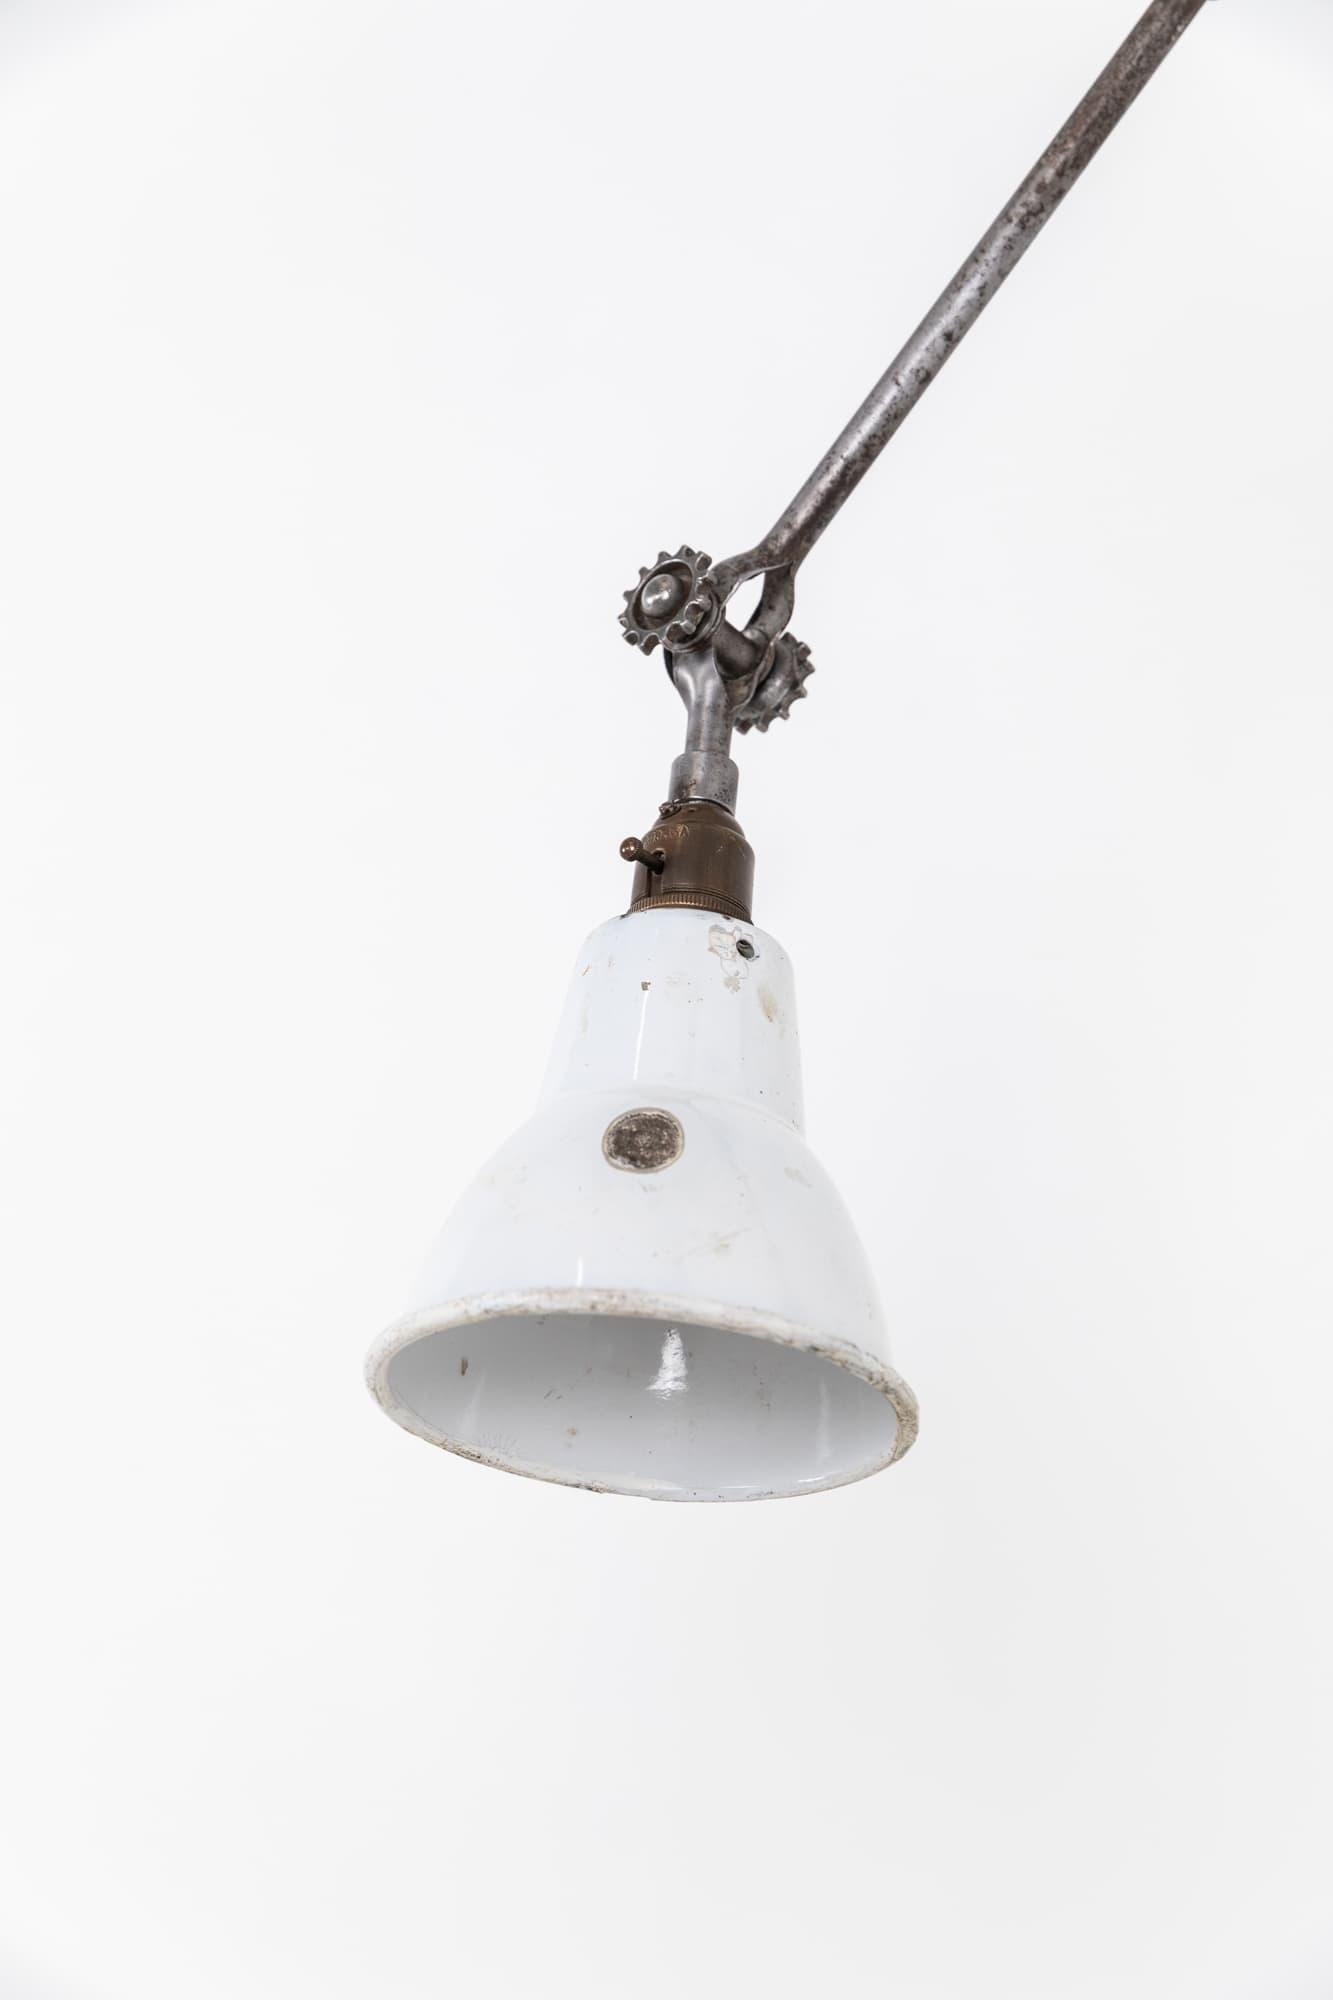 Exemple très rare d'une lampe de machiniste fabriquée en Angleterre par Dugdills. C.1910.

Fabriqué en acier avec une très belle finition patinée sur l'ensemble, avec les anciens boulons de serrage crantés. Entièrement articulée, cette lampe